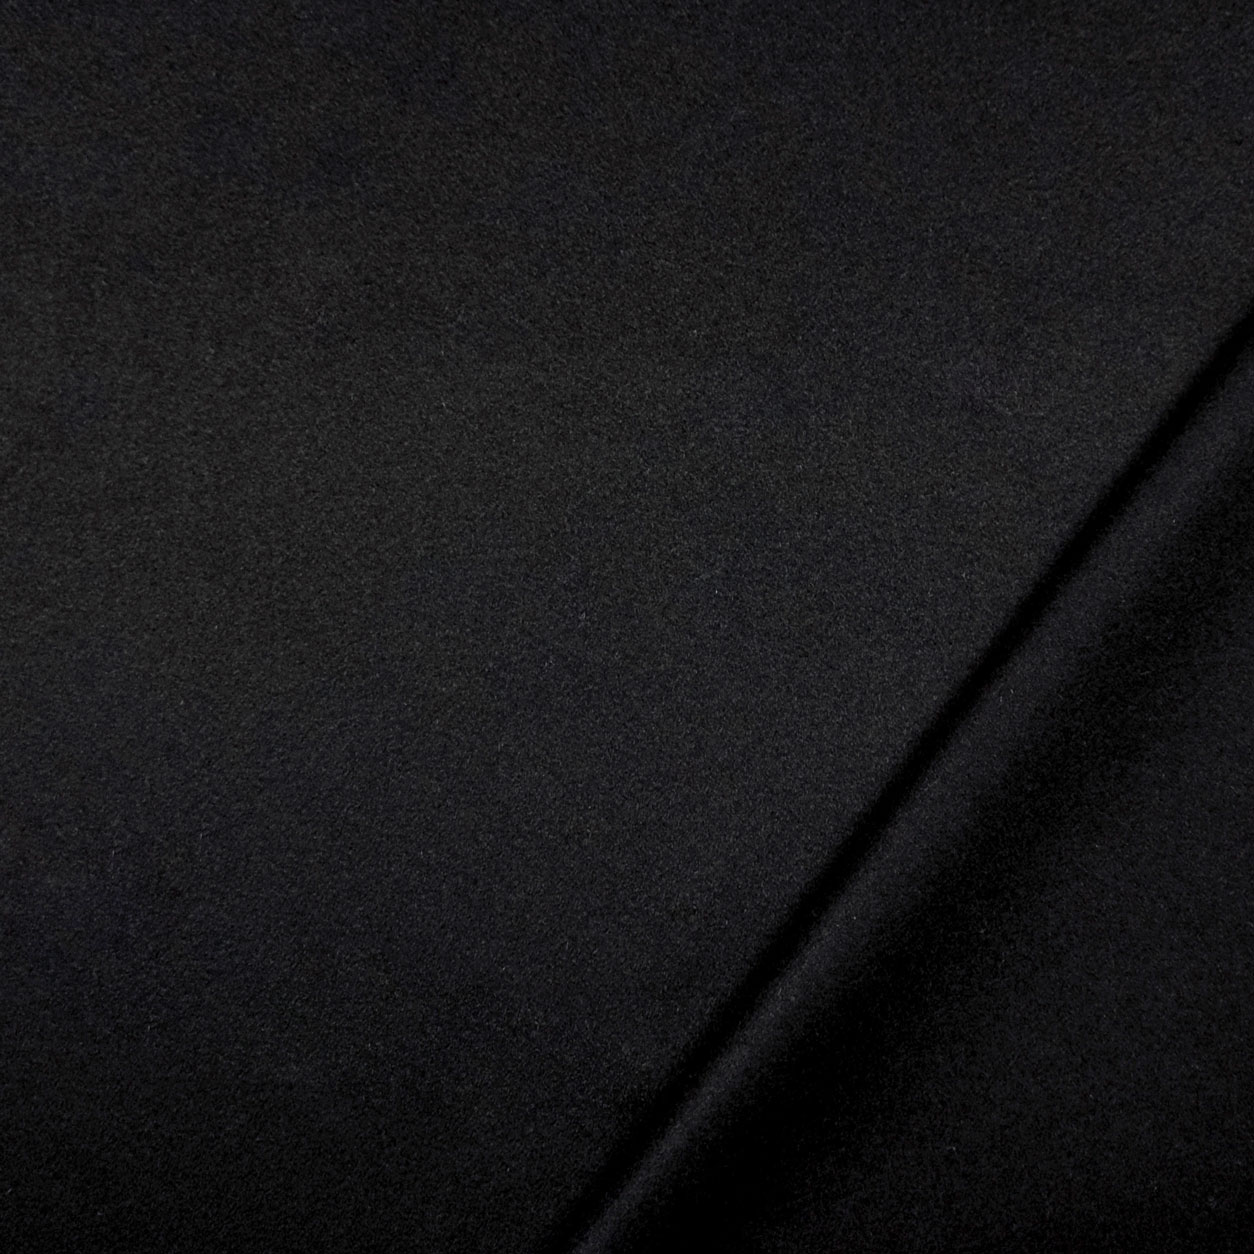 Tessuto per cappotto di alta moda cachemire nero